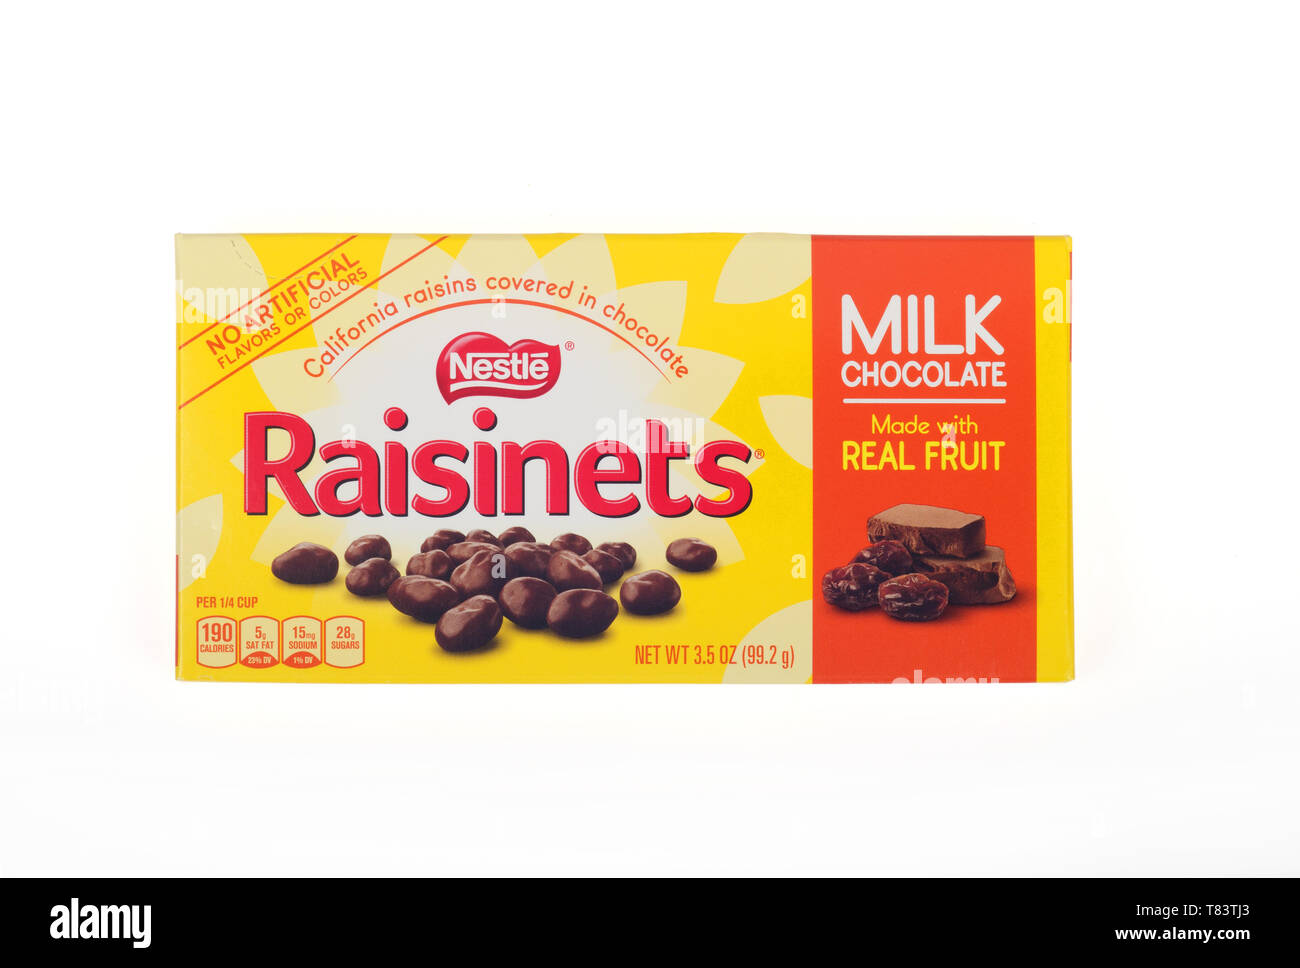 Nestle Raisinets cioccolato al latte ricoperto di uvetta candy box Foto Stock